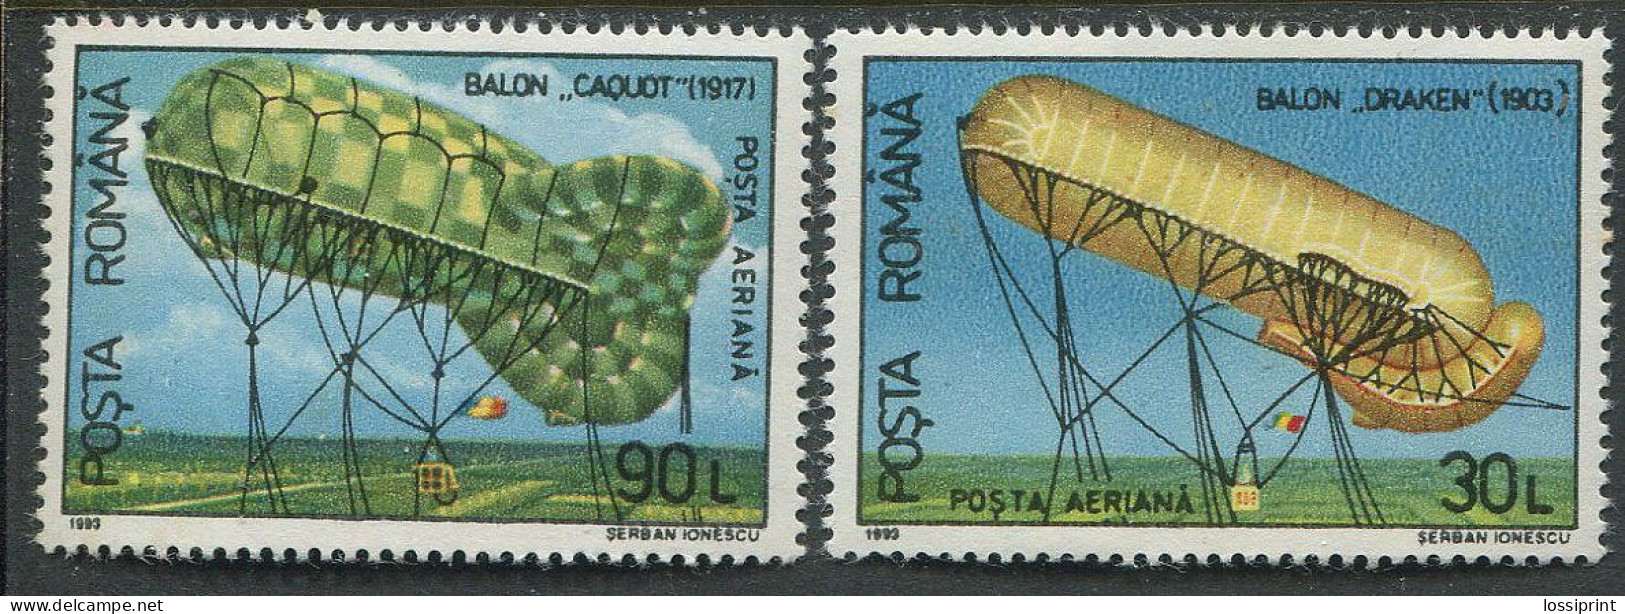 Romania:Unused Stamps Balloons, 1993, MNH - Zeppeline